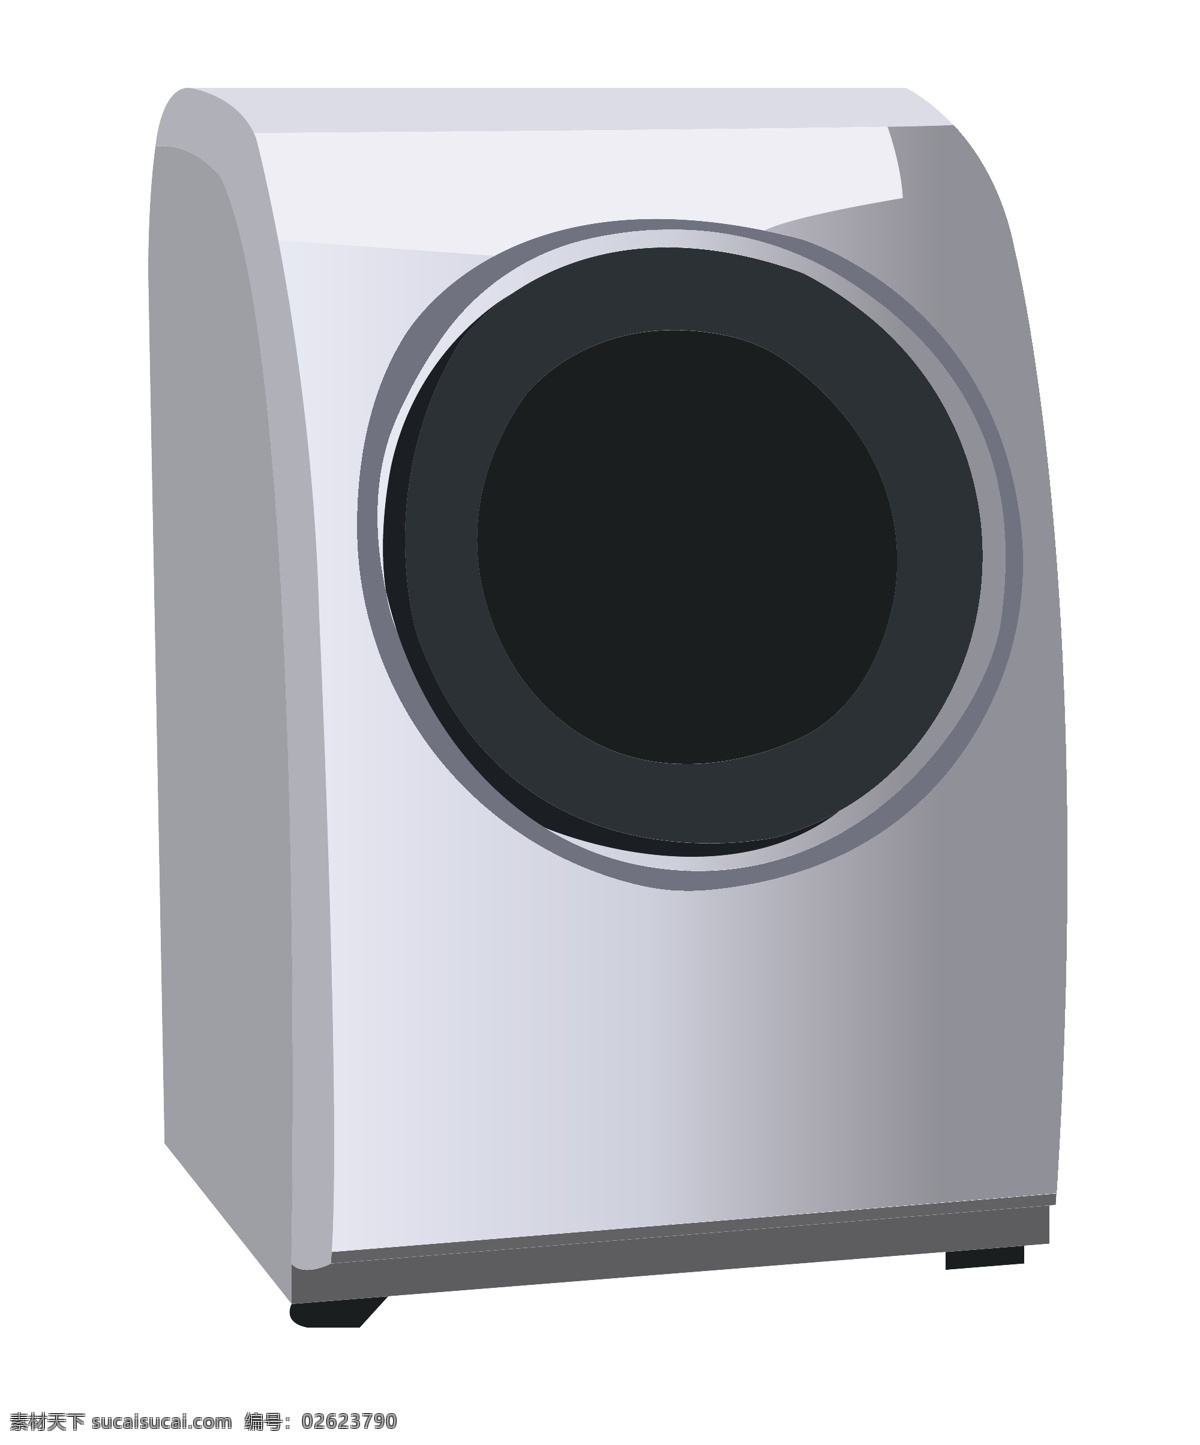 家用电器 洗衣机 插画 白色的洗衣机 卡通插画 电器插画 用电器具 用电产品 全自动洗衣机